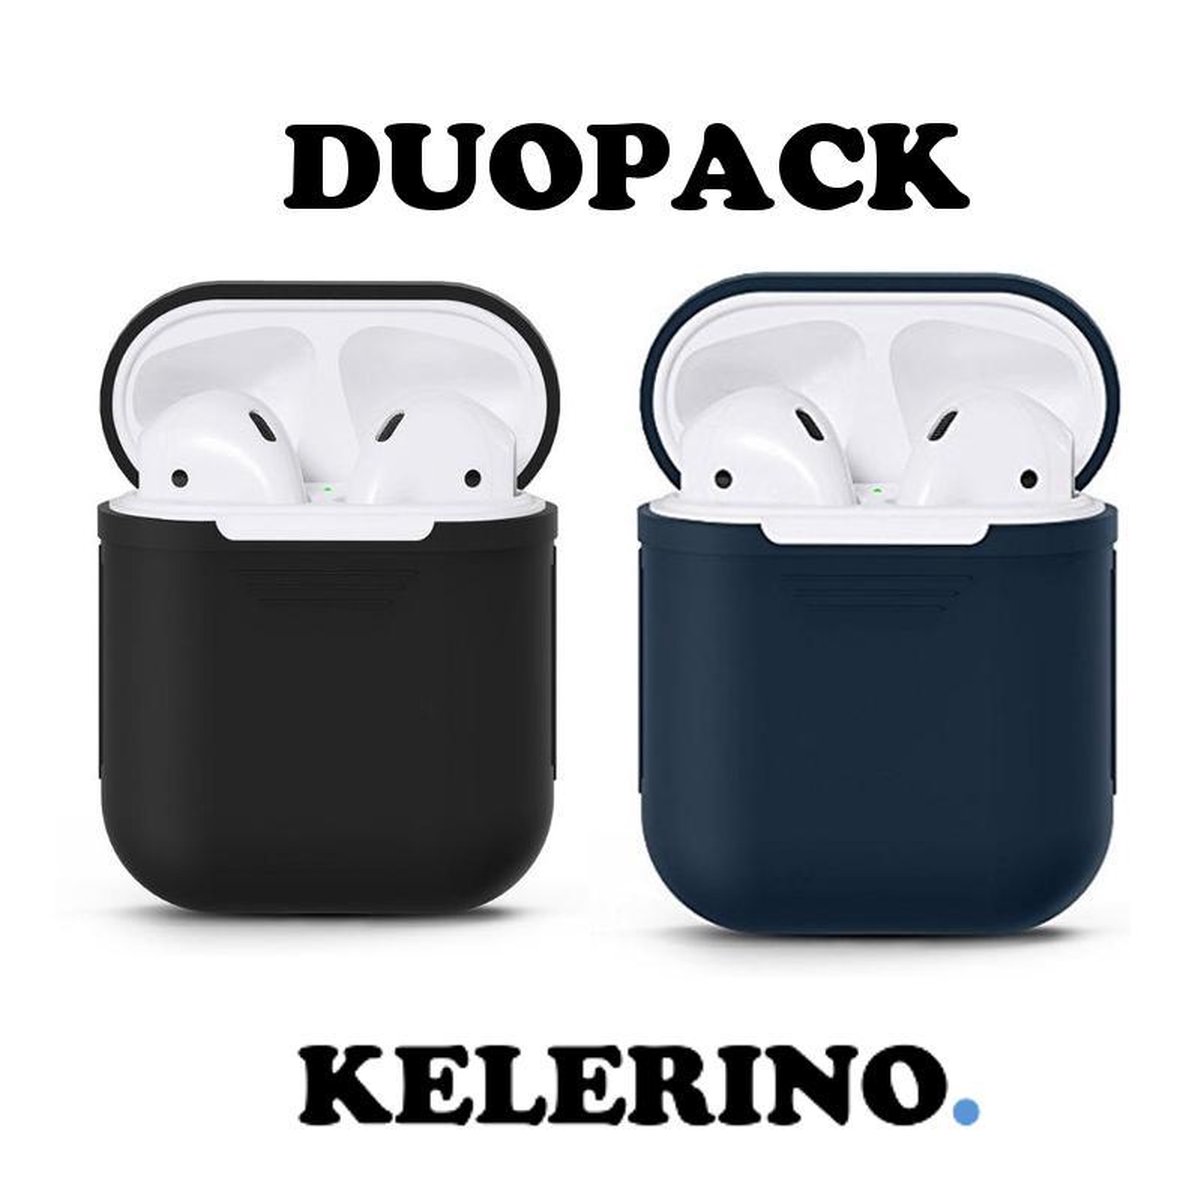 KELERINO. Siliconen hoesje geschikt voor Apple Airpods 1 & 2 - Duopack - Zwart / Donker Blauw